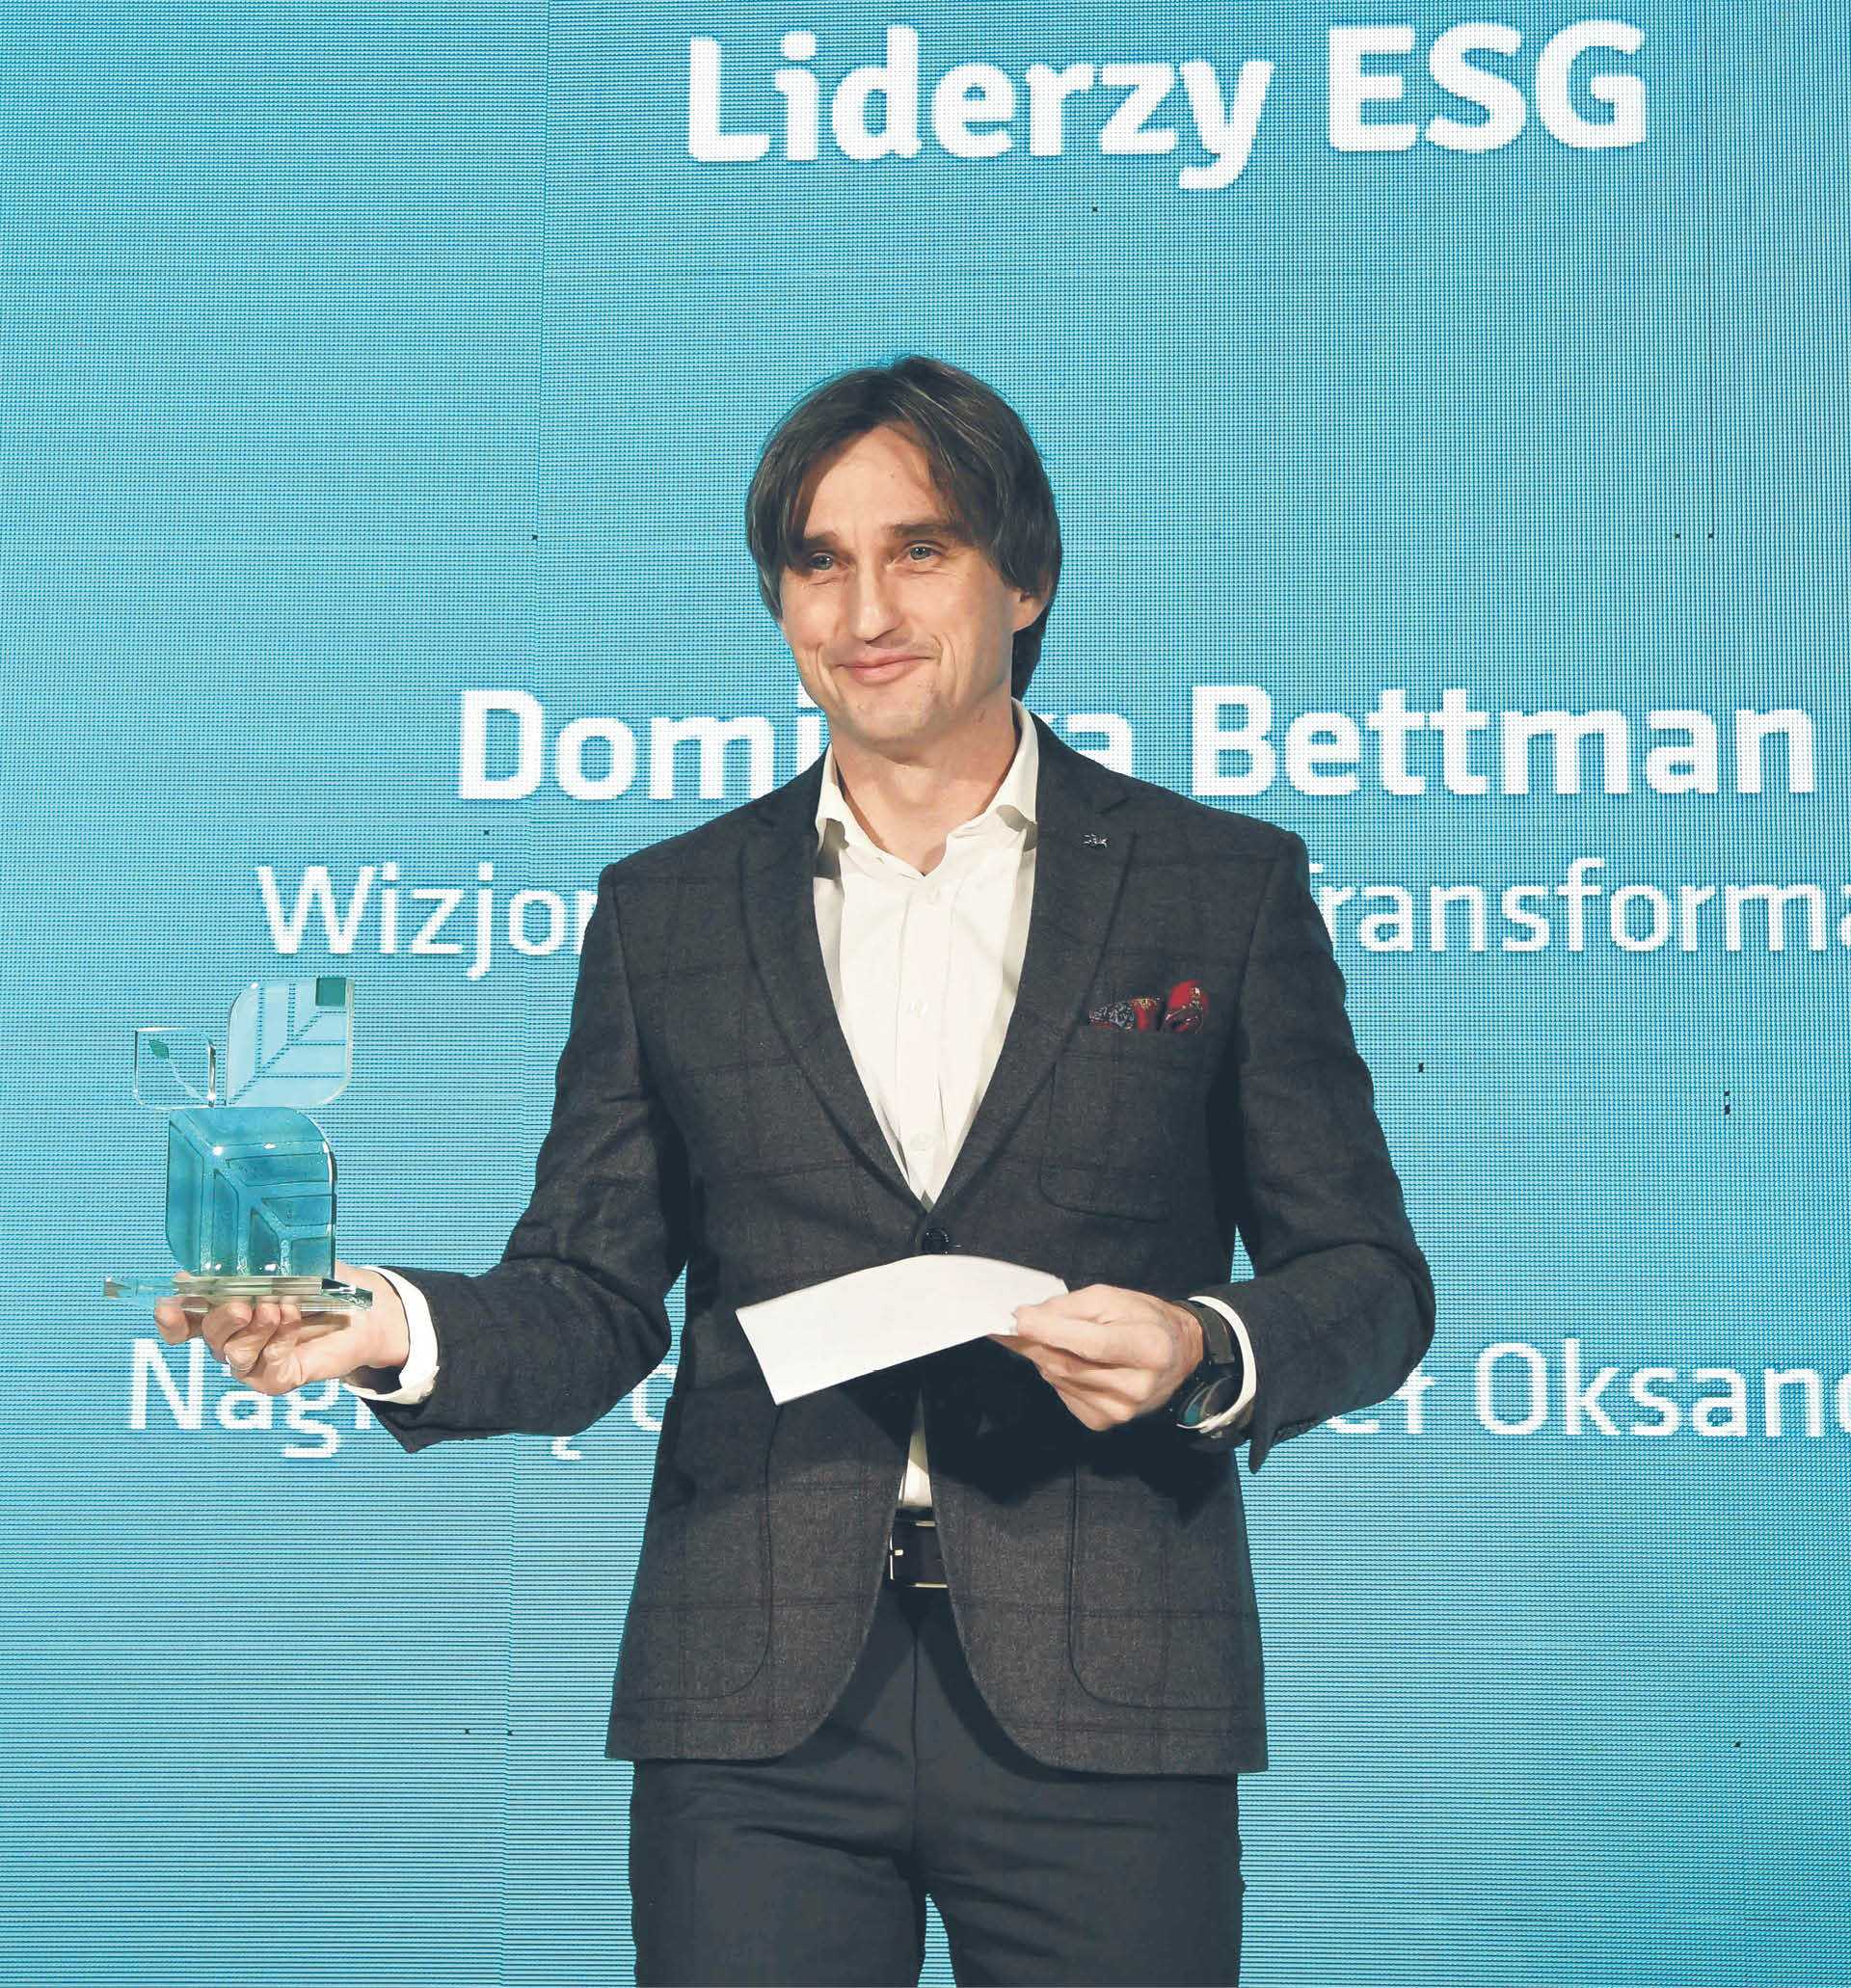 Nagrodę w imieniu Dominiki Bettman odebrał Paweł Oksanowicz